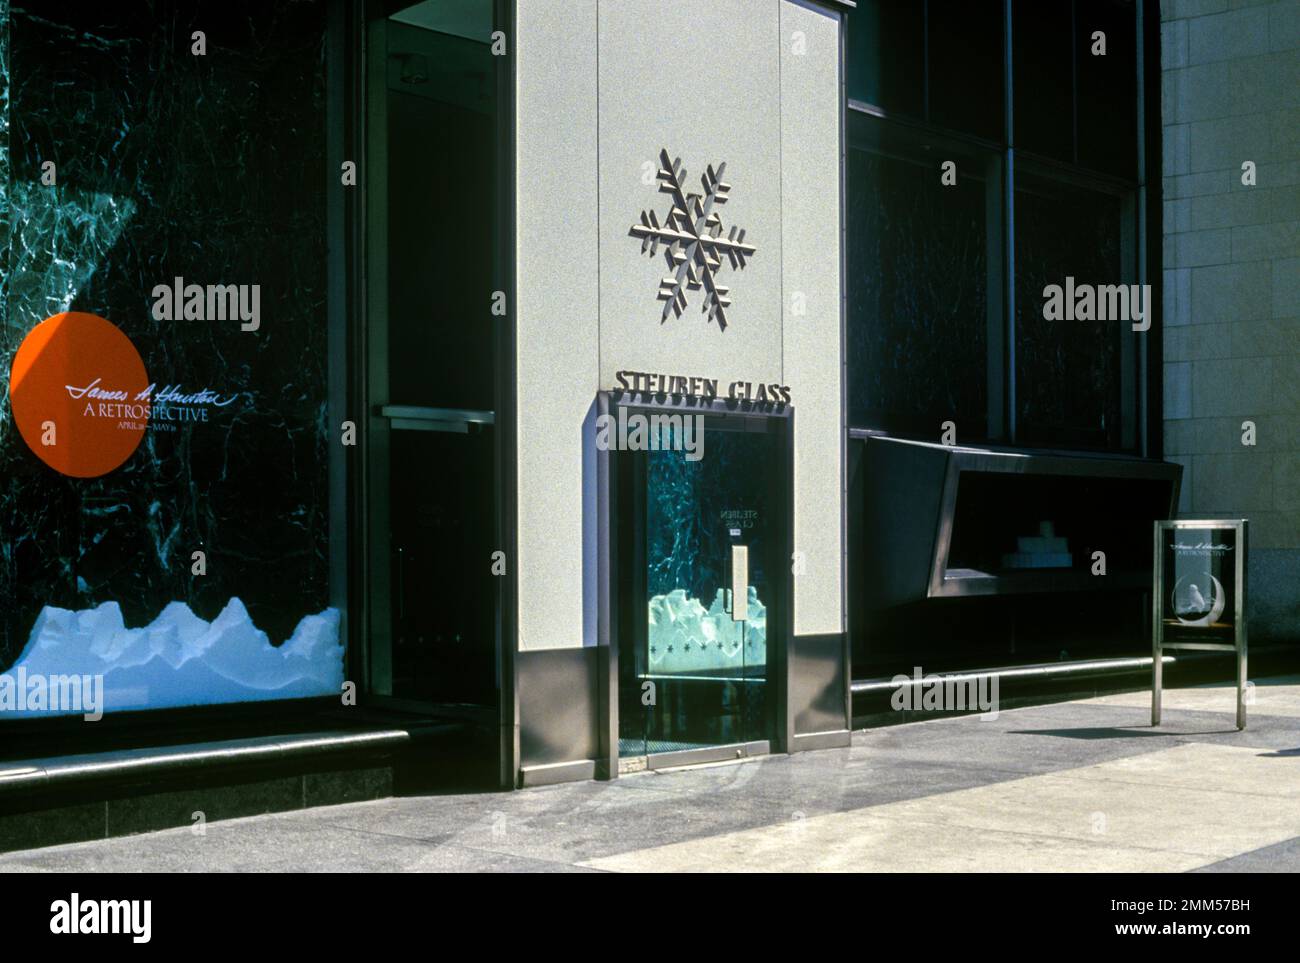 1987 HISTORISCHES STEUBEN GLASGESCHÄFT FIFTH AVENUE MANHATTAN NEW YORK CITY USA Stockfoto